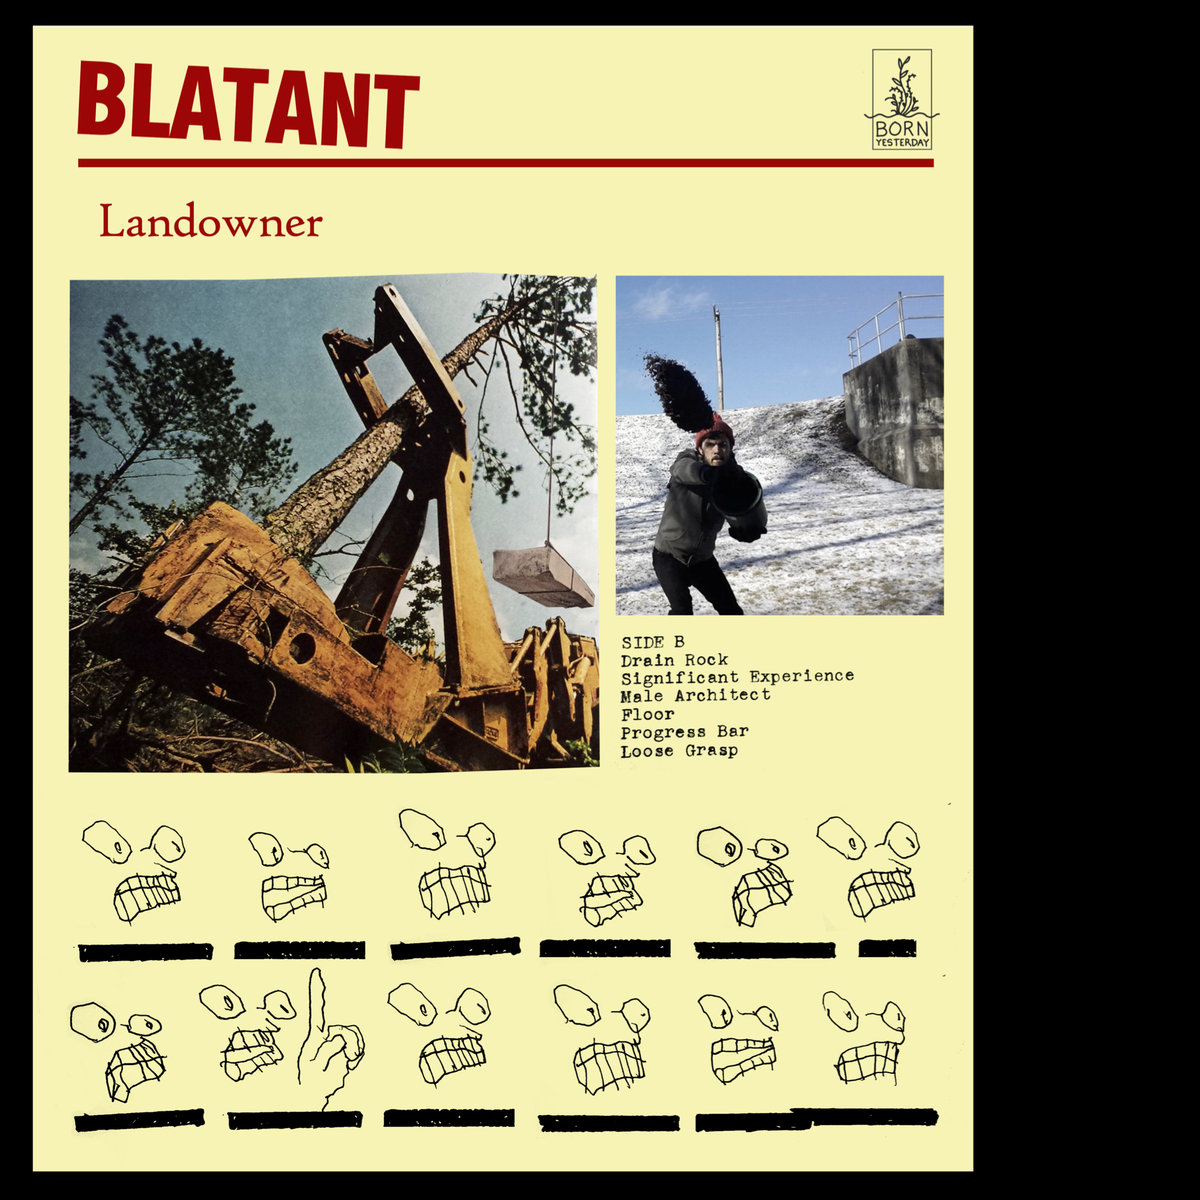 Basemental: Landowner's new release, Blatant, skewers consumerism